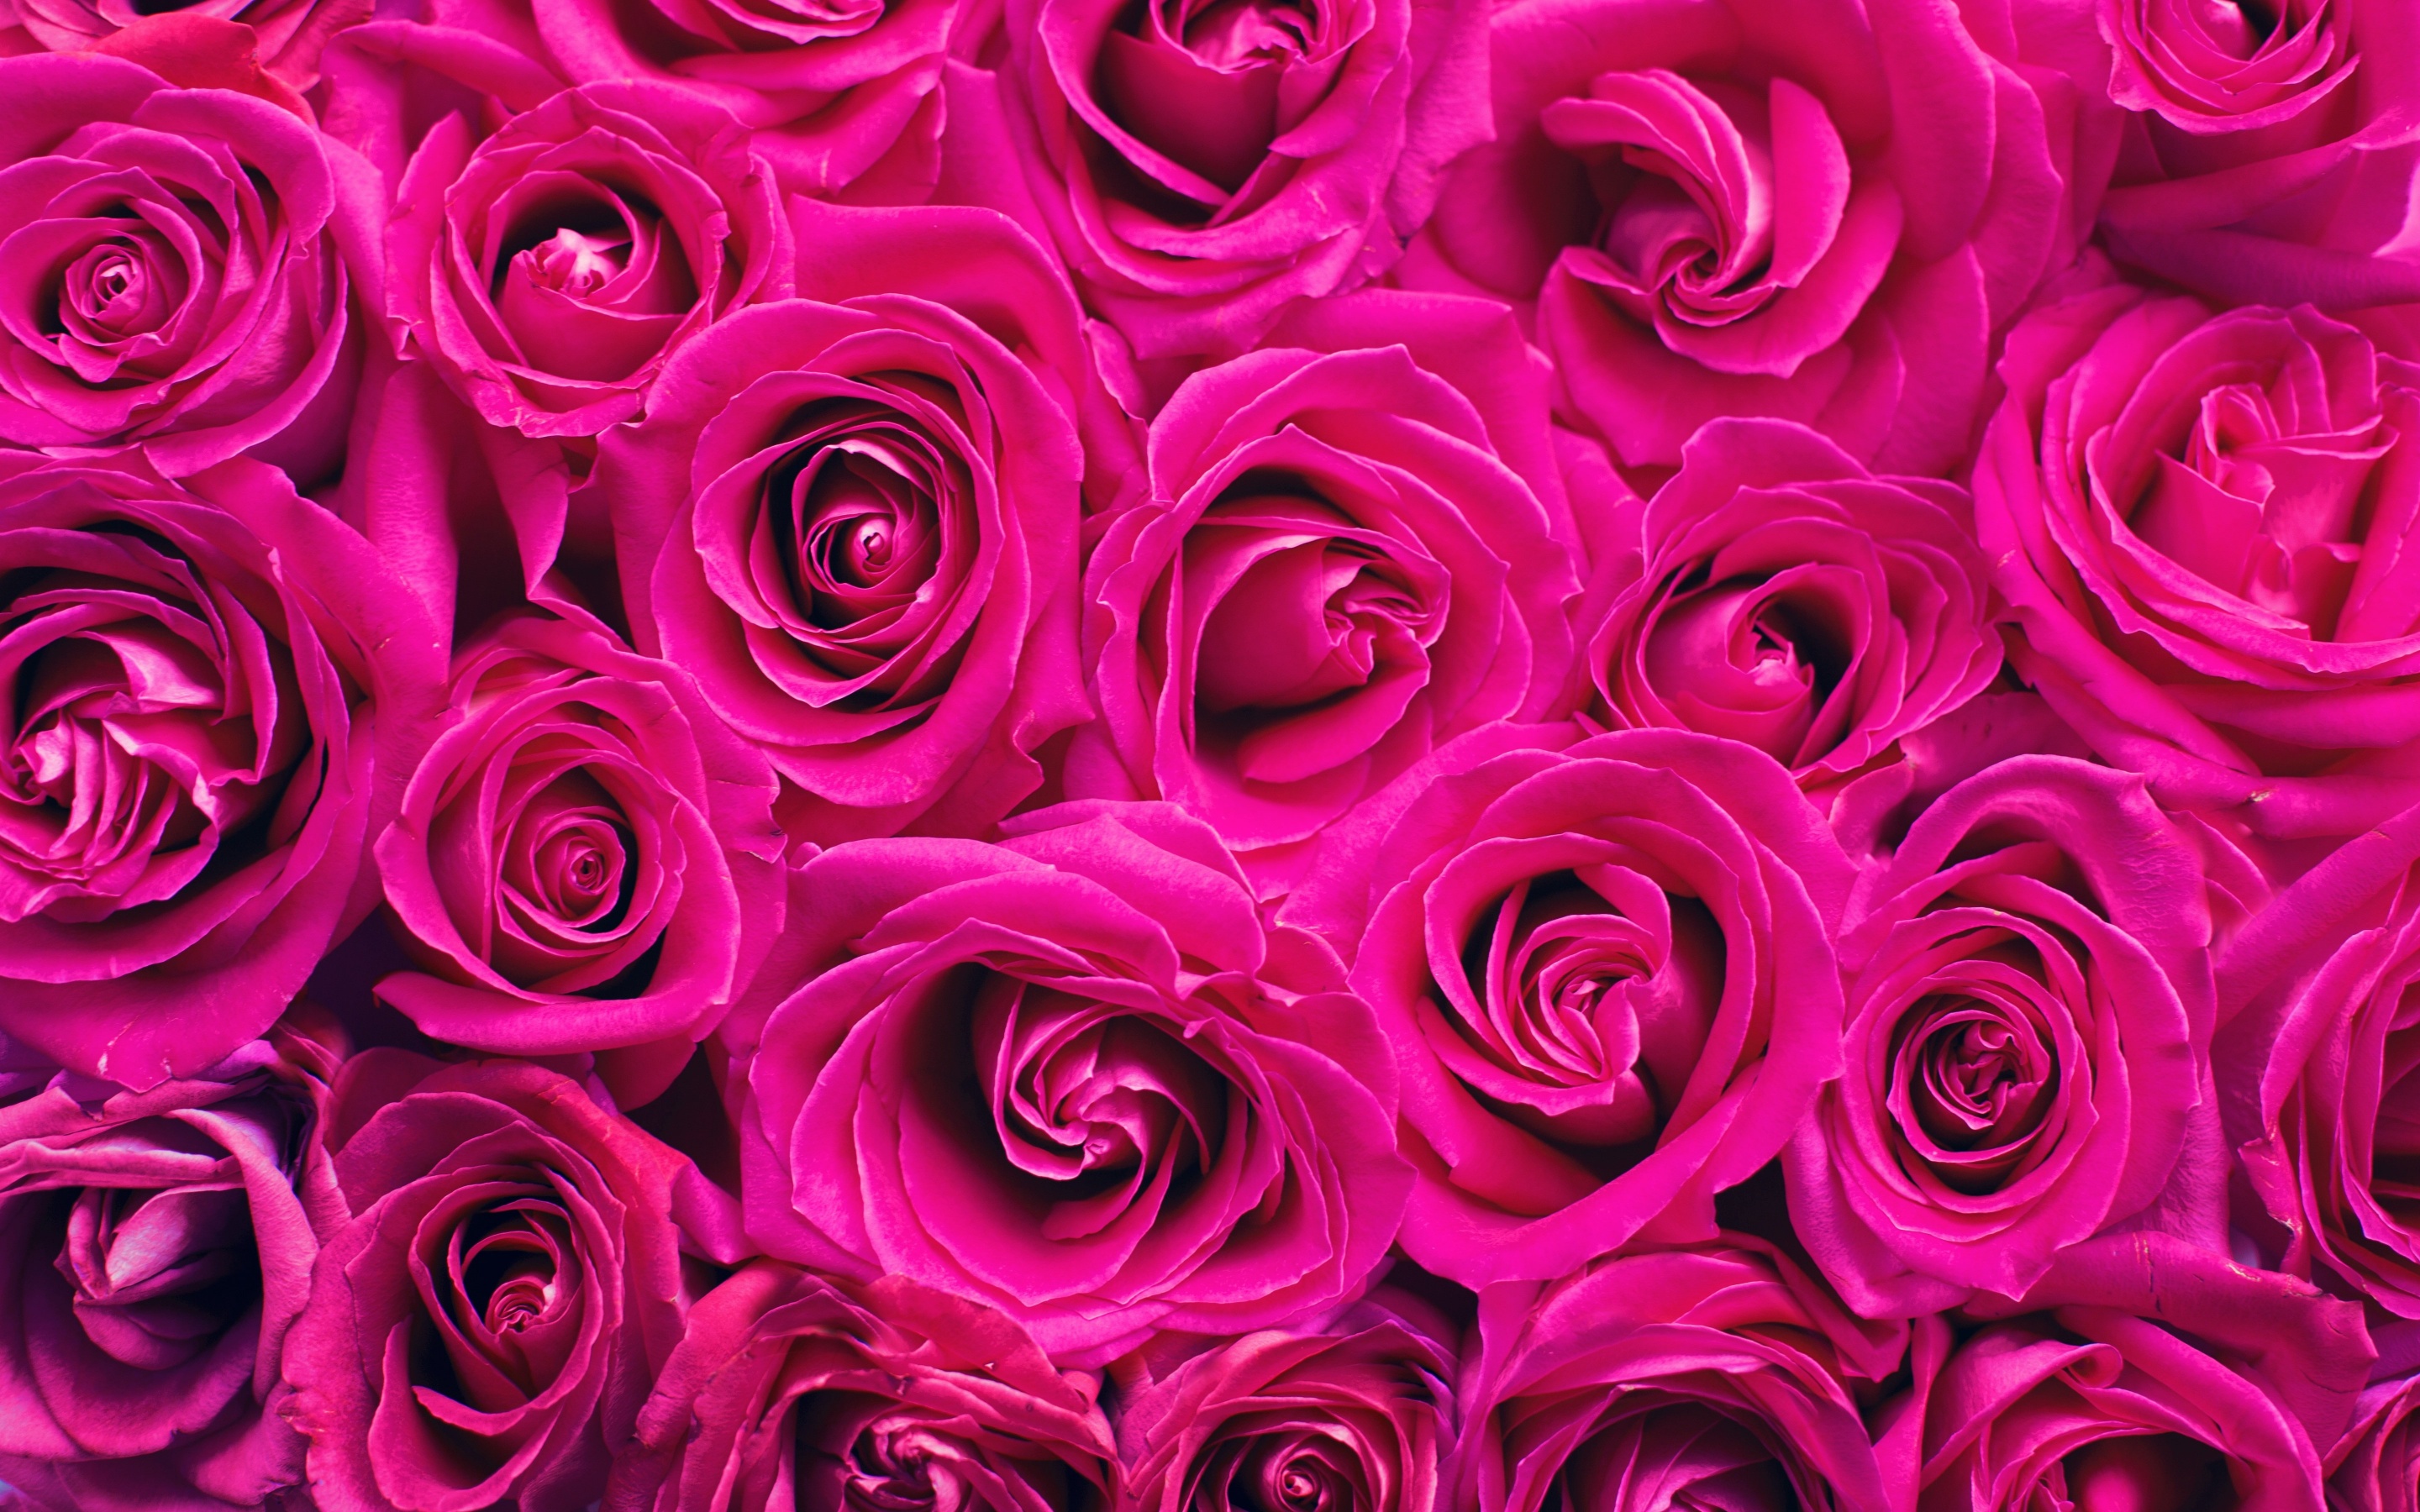 Những bông hoa hồng hồng nhẹ nhàng như mây mờ làm cho tái búp trắng càng thêm nổi bật. Điều đó đem lại cho chúng ta cảm giác ngọt ngào và lãng mạn.